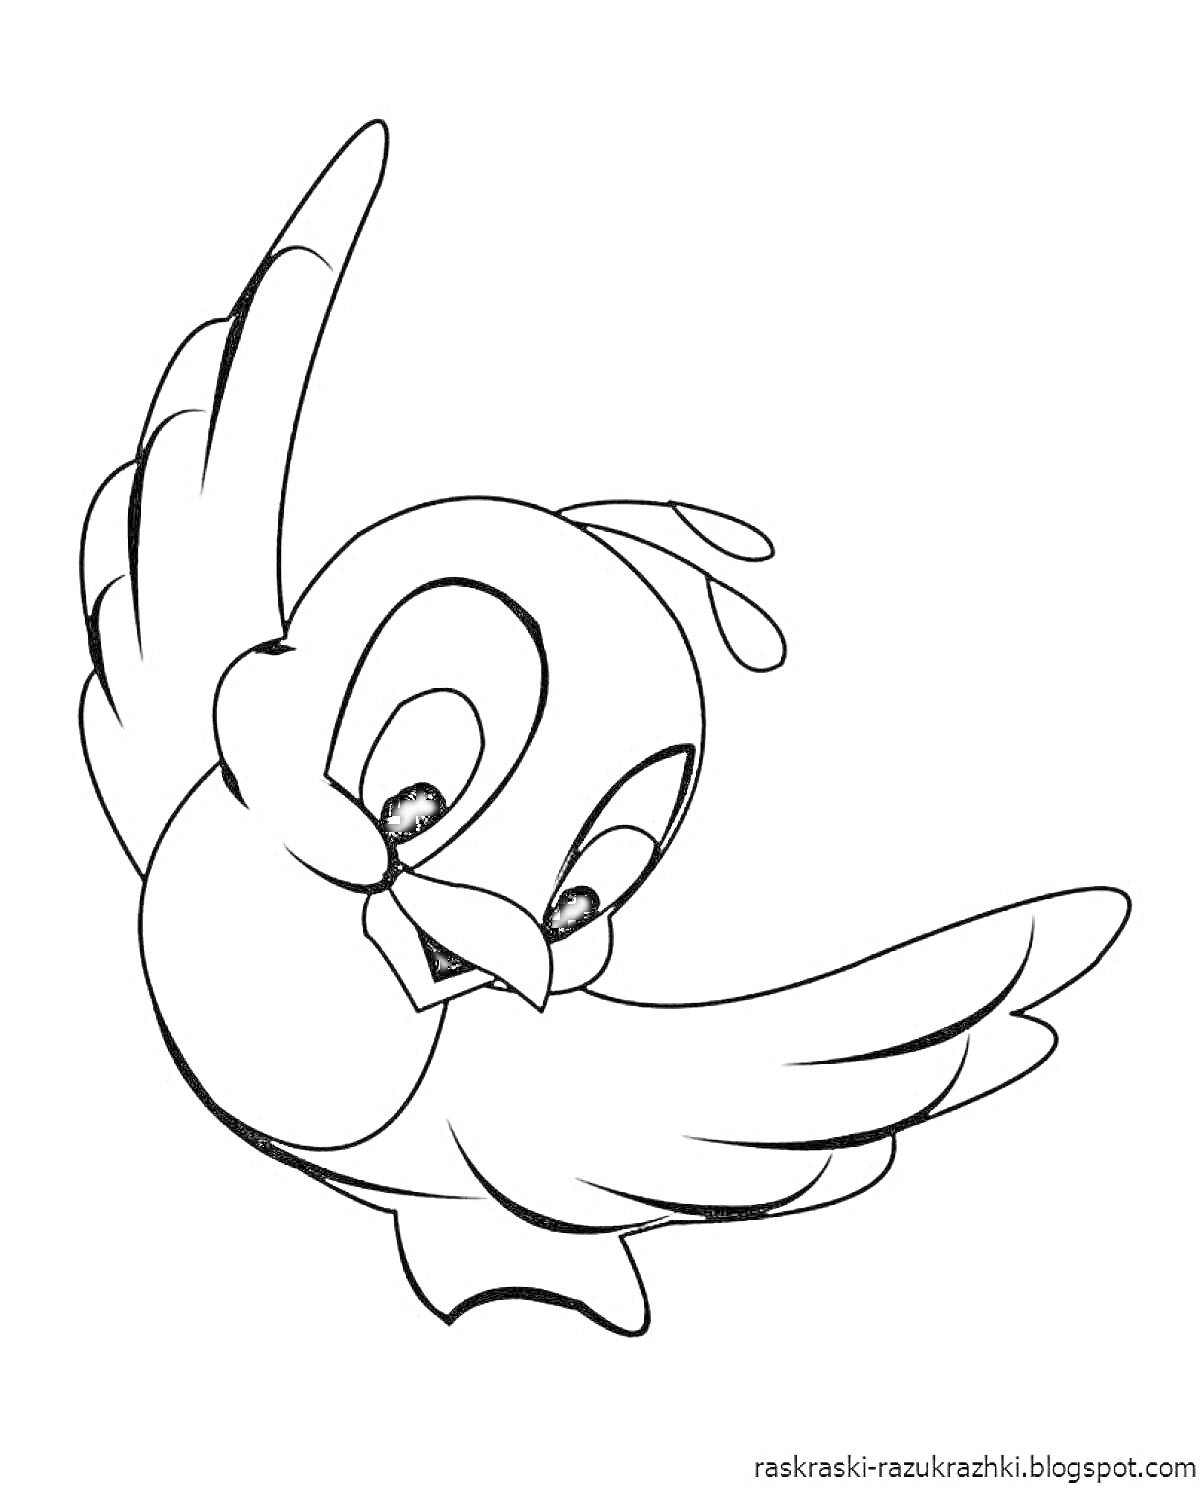 Раскраска Летящая улыбающаяся птичка с поднятым крылом